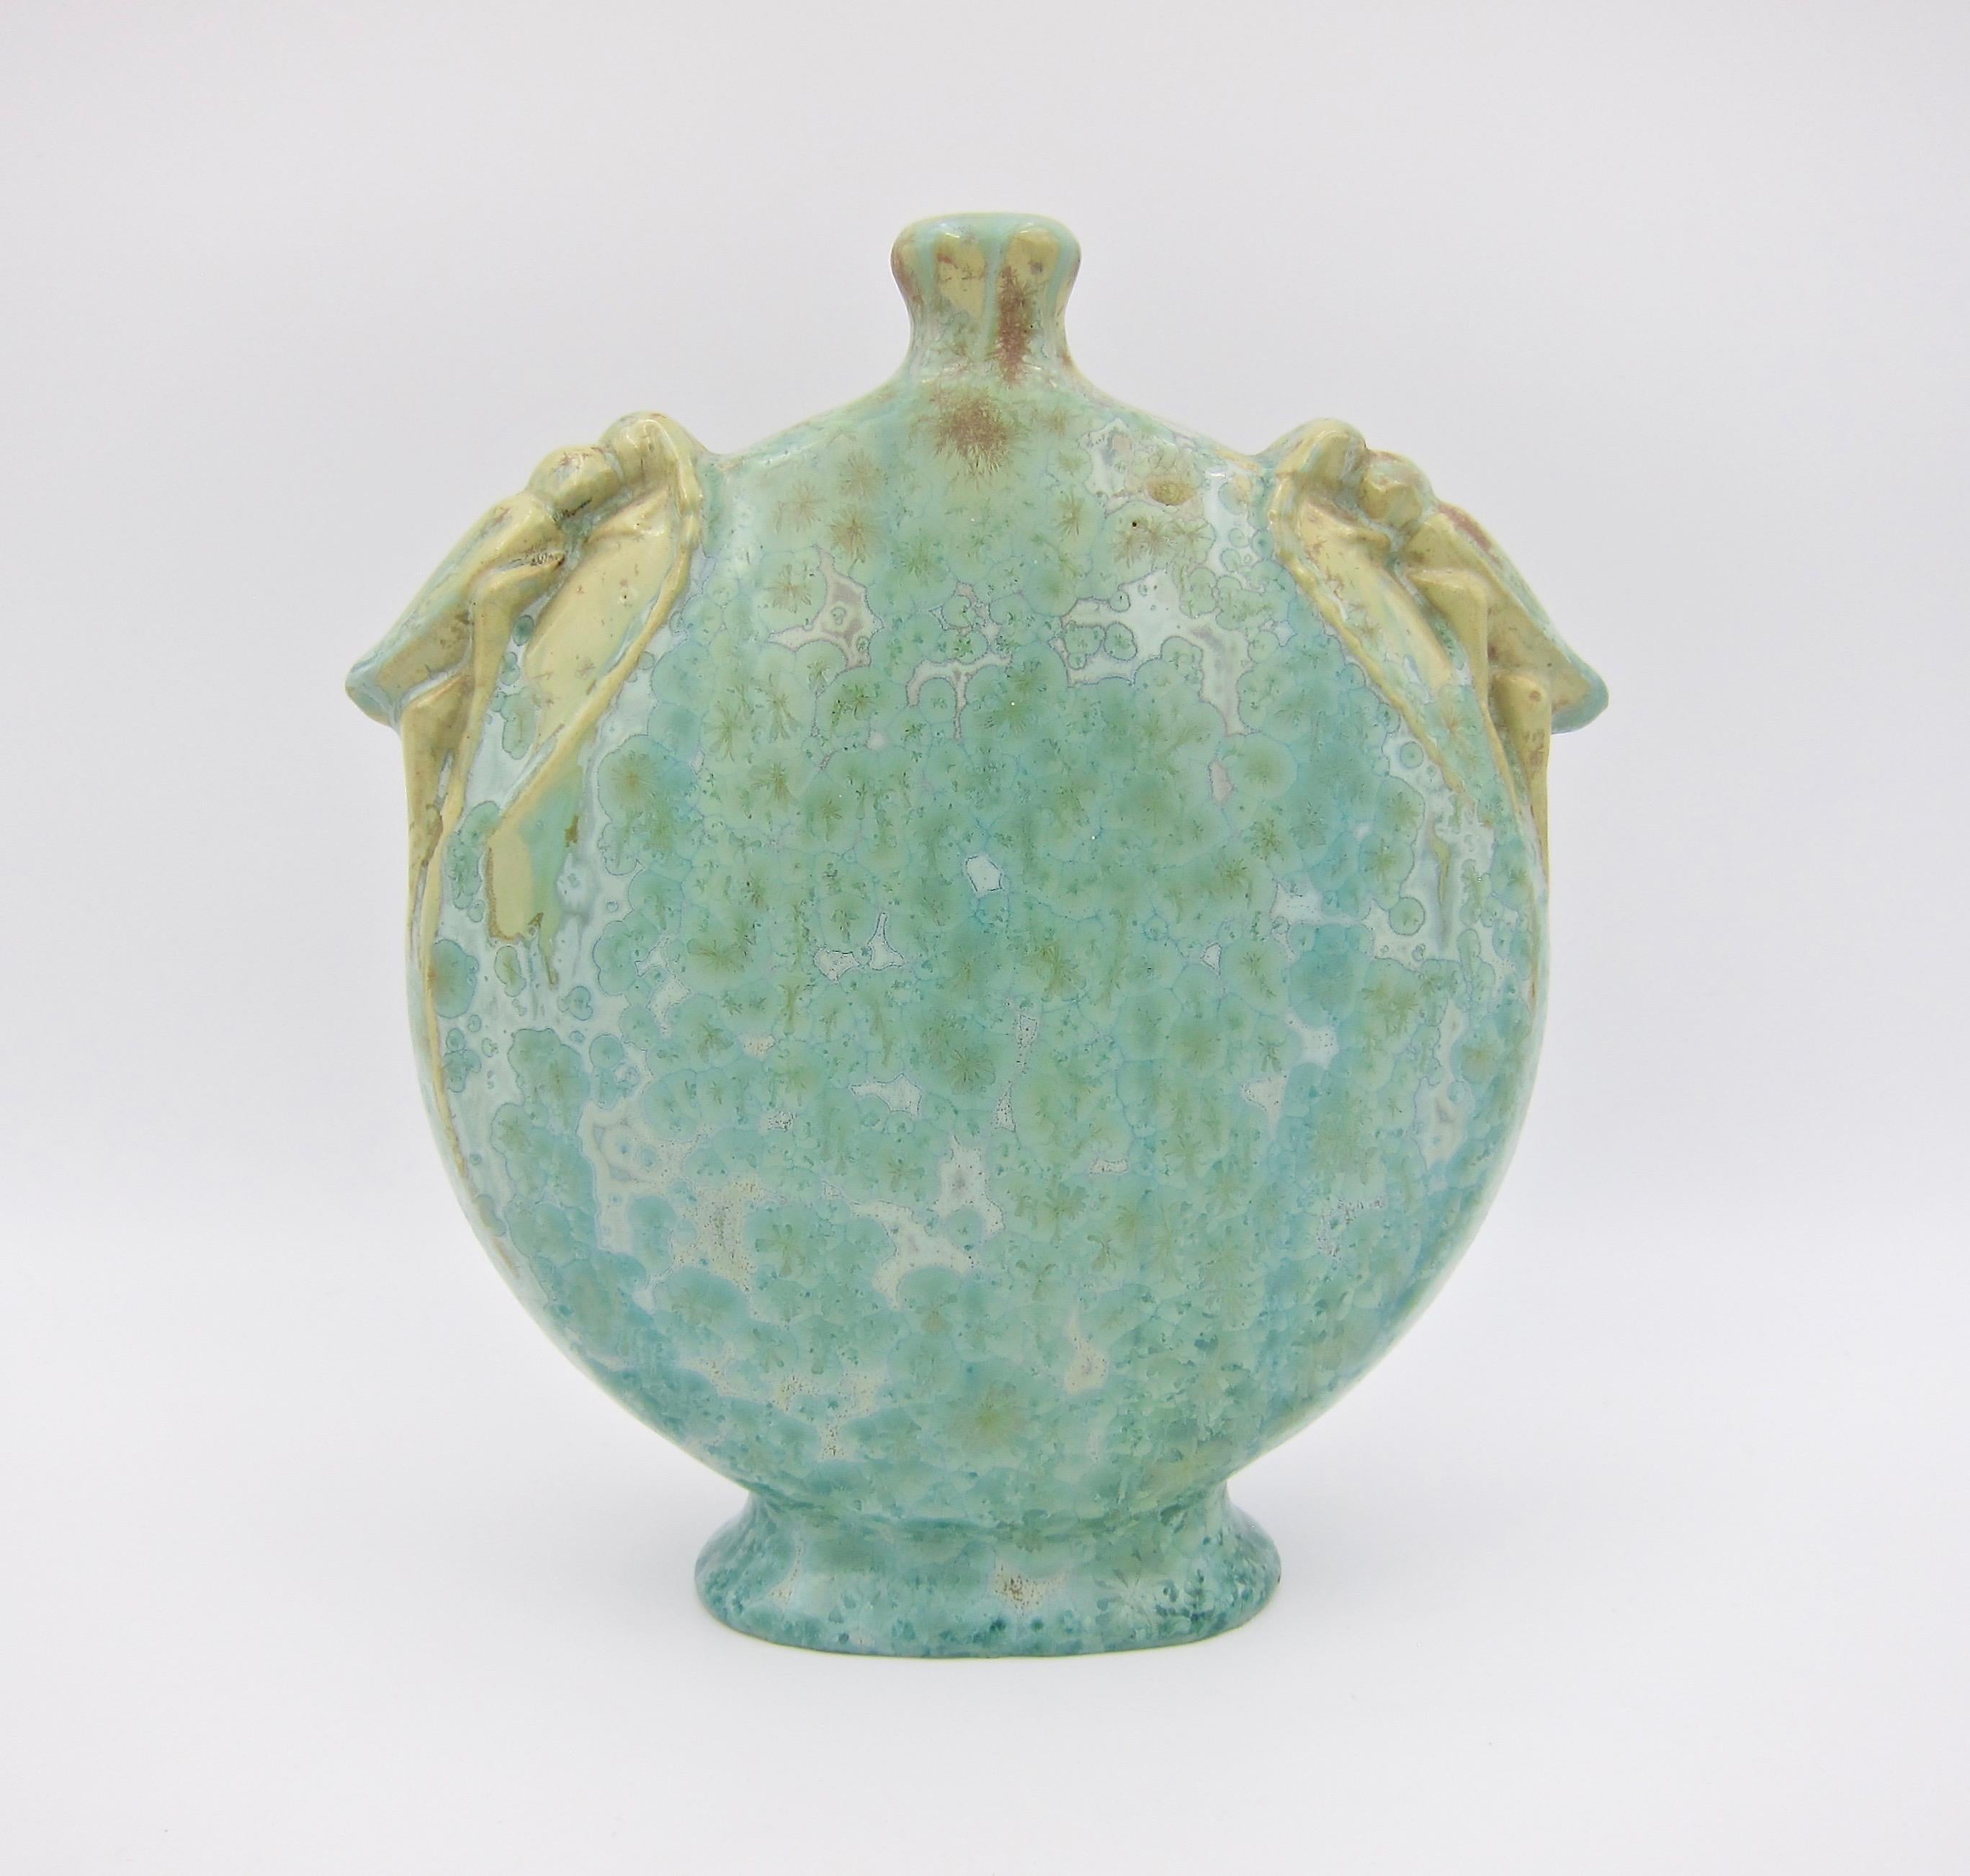 Glazed Early 20th Century French Pierrefonds Cicada Vase with Crystalline Glaze